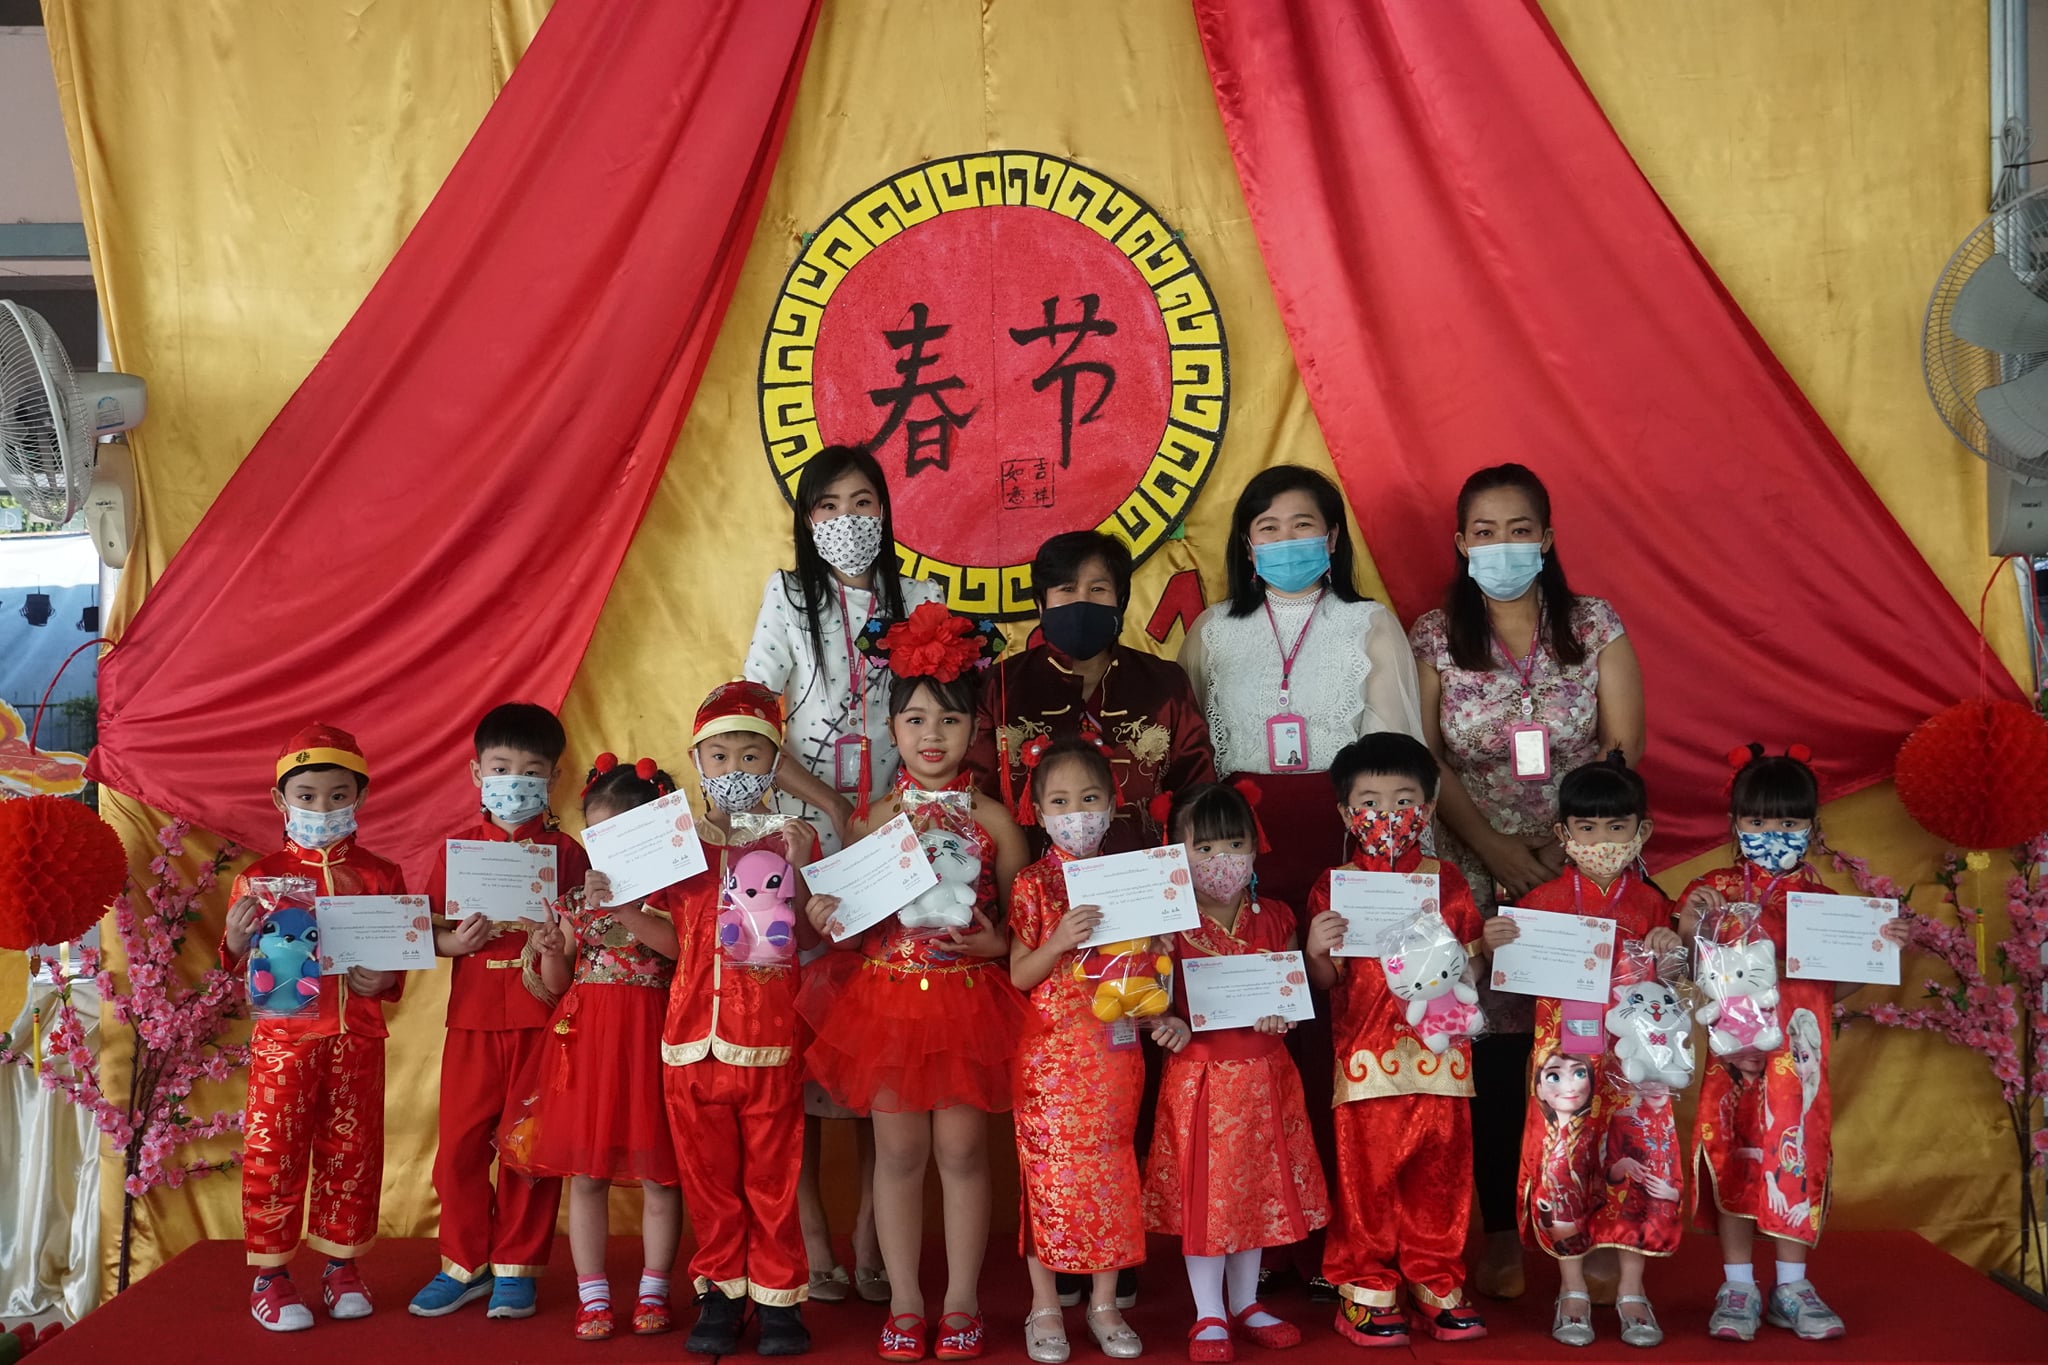 กิจกรรม Chinese New Year ประจำปีการศึกษา 2563